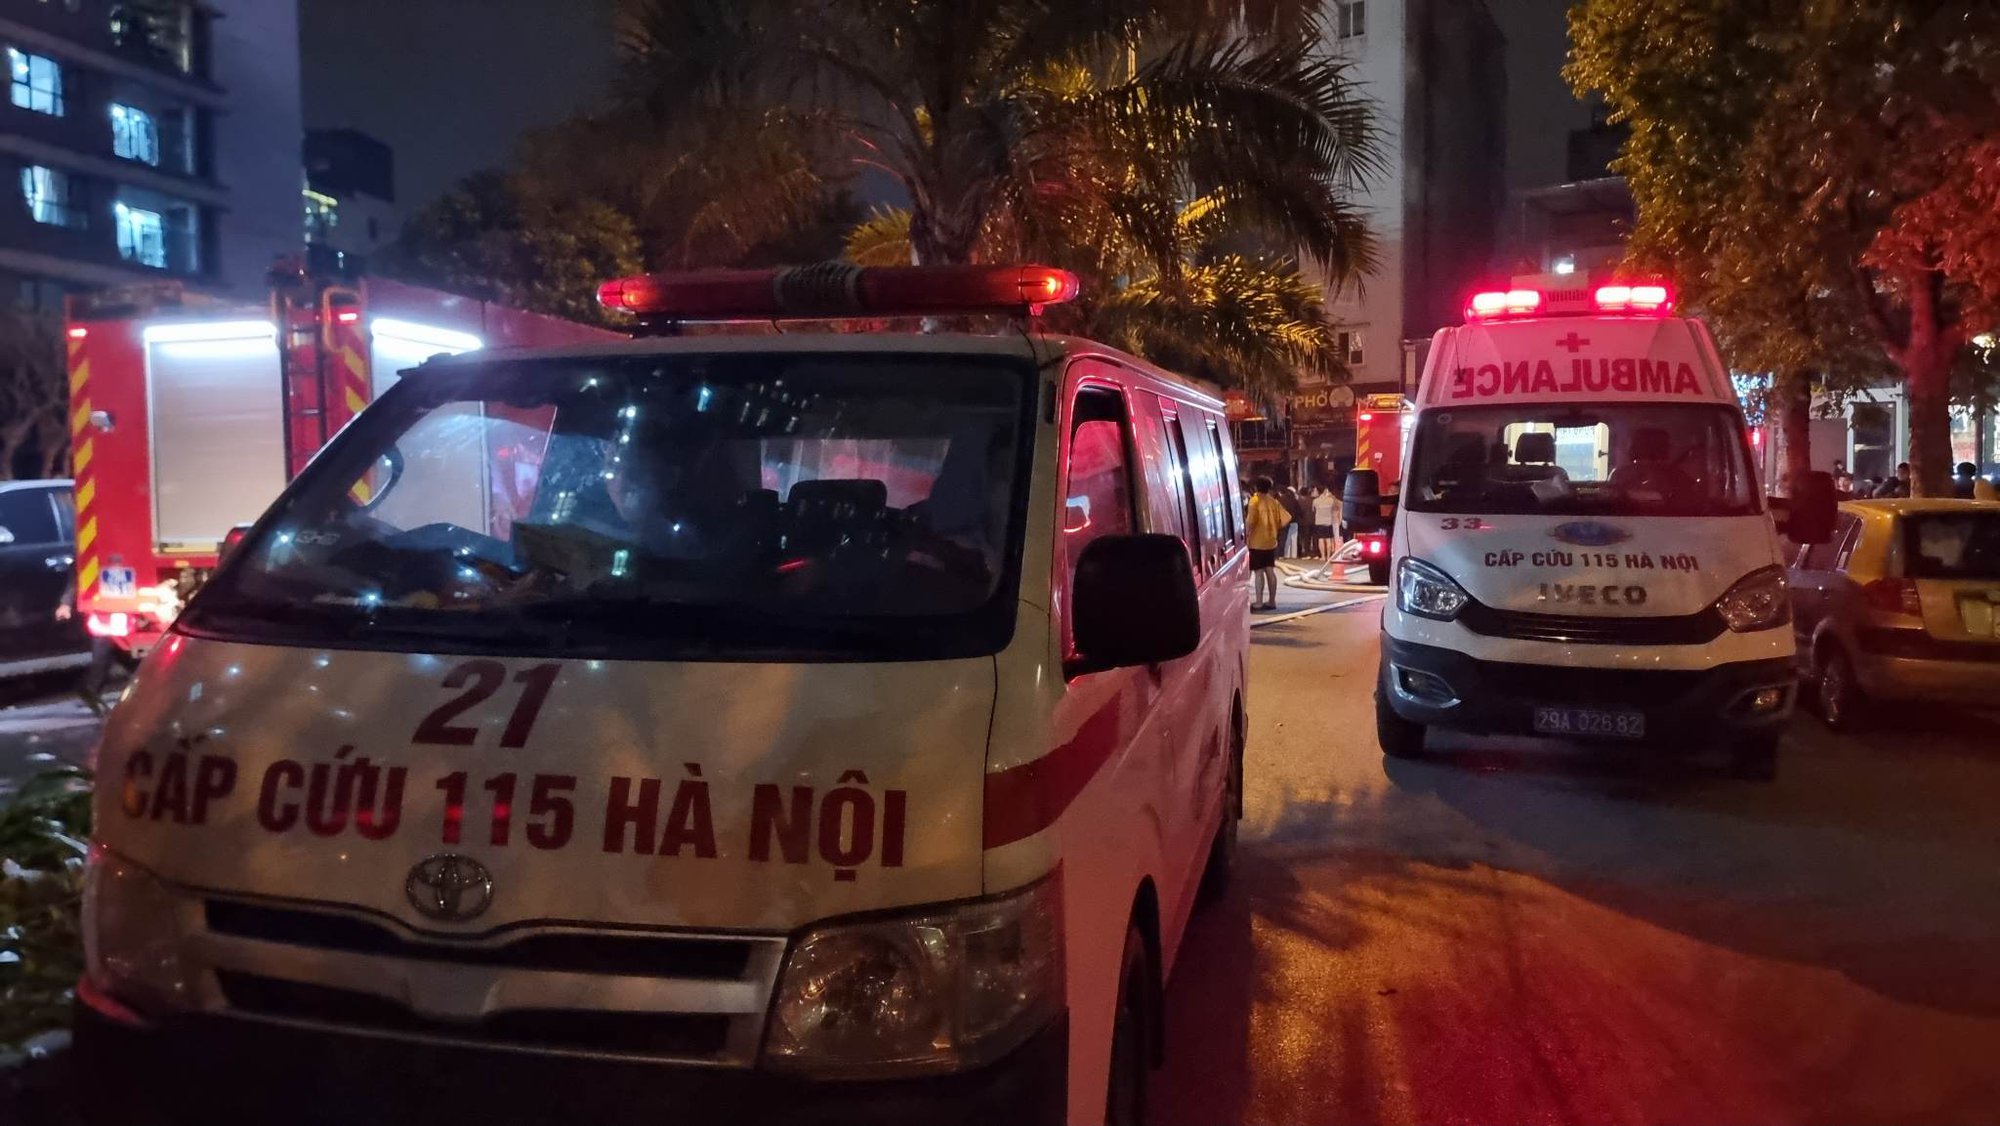 Lời khai của các nạn nhân trong vụ nổ lớn cửa hàng xe máy ở Hà Nội - Ảnh 2.